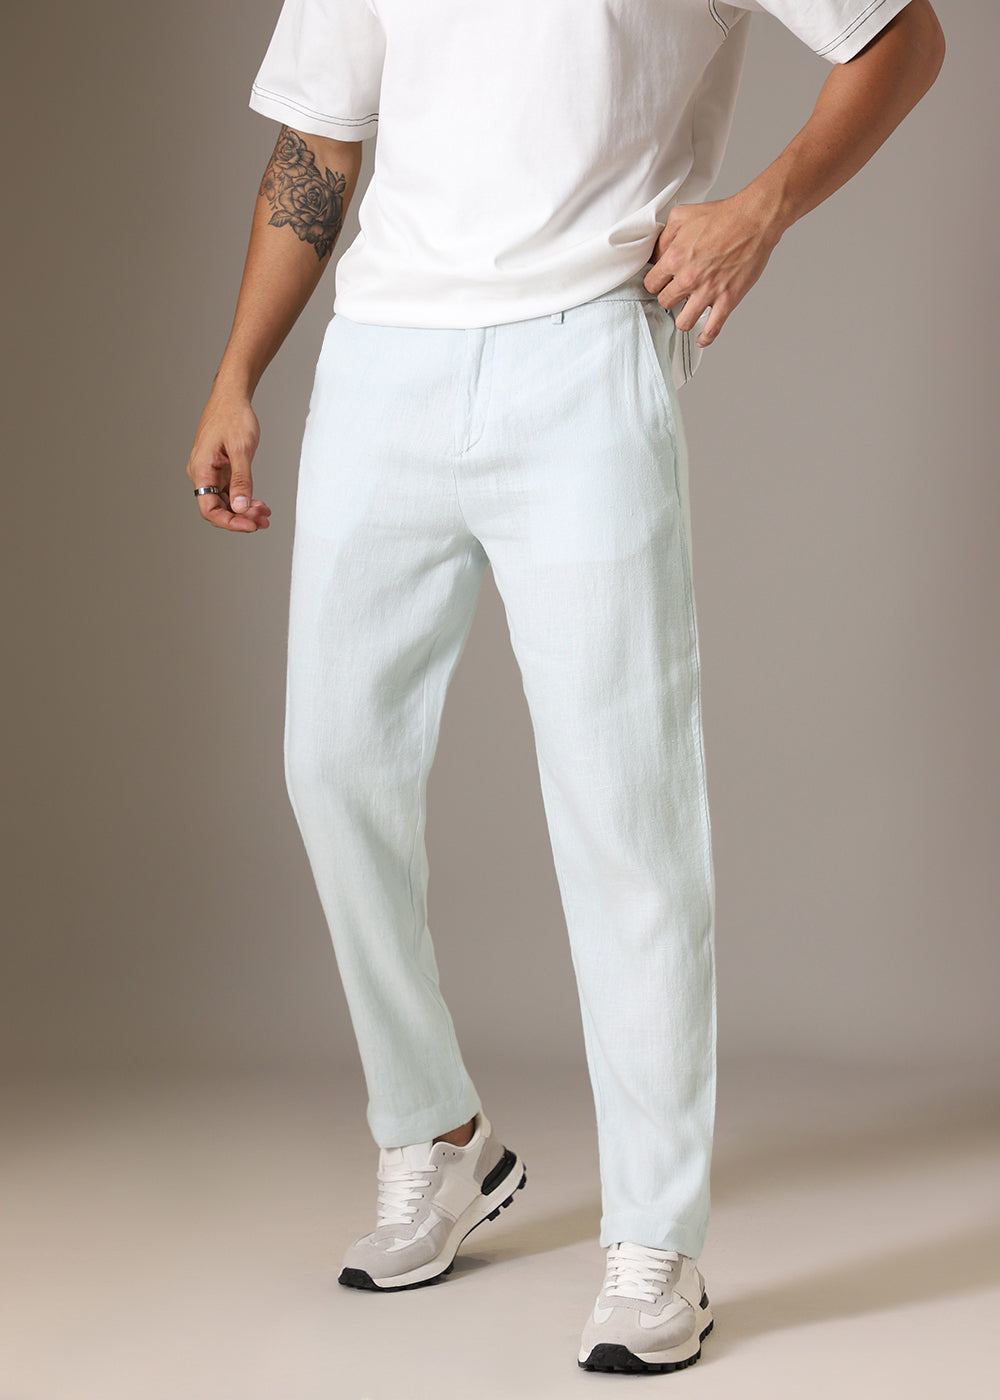 Pastel Blue Linen Pant